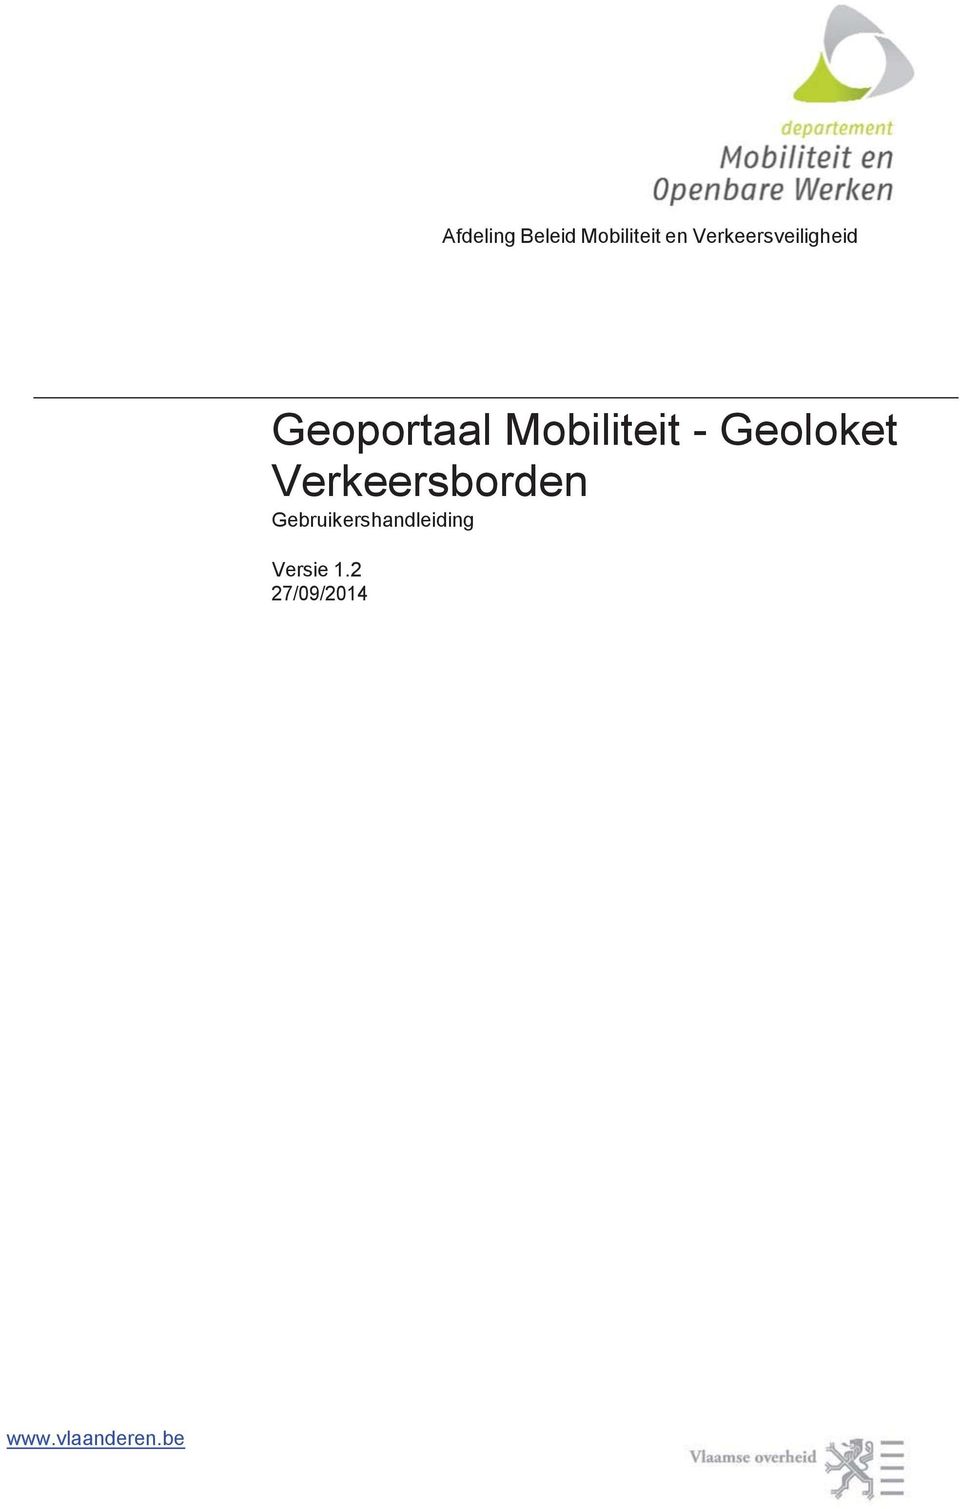 Mobiliteit - Geoloket Verkeersborden